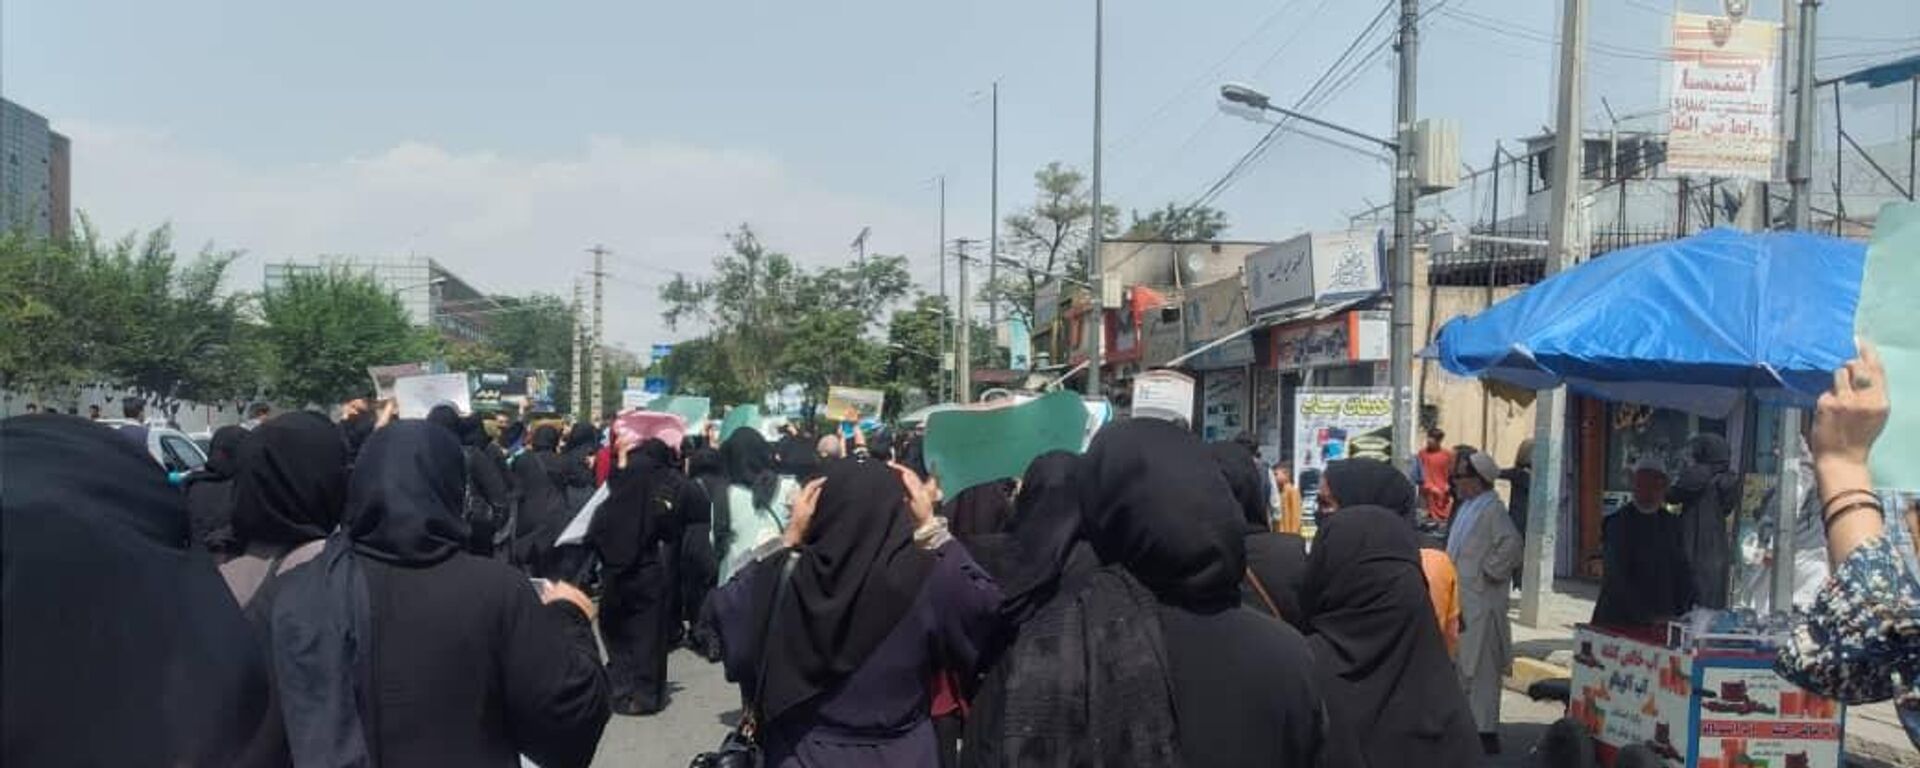   اعتراض زنان در کابل با گلوله طالبان پاسخ داده شد   - اسپوتنیک افغانستان  , 1920, 23.01.2024